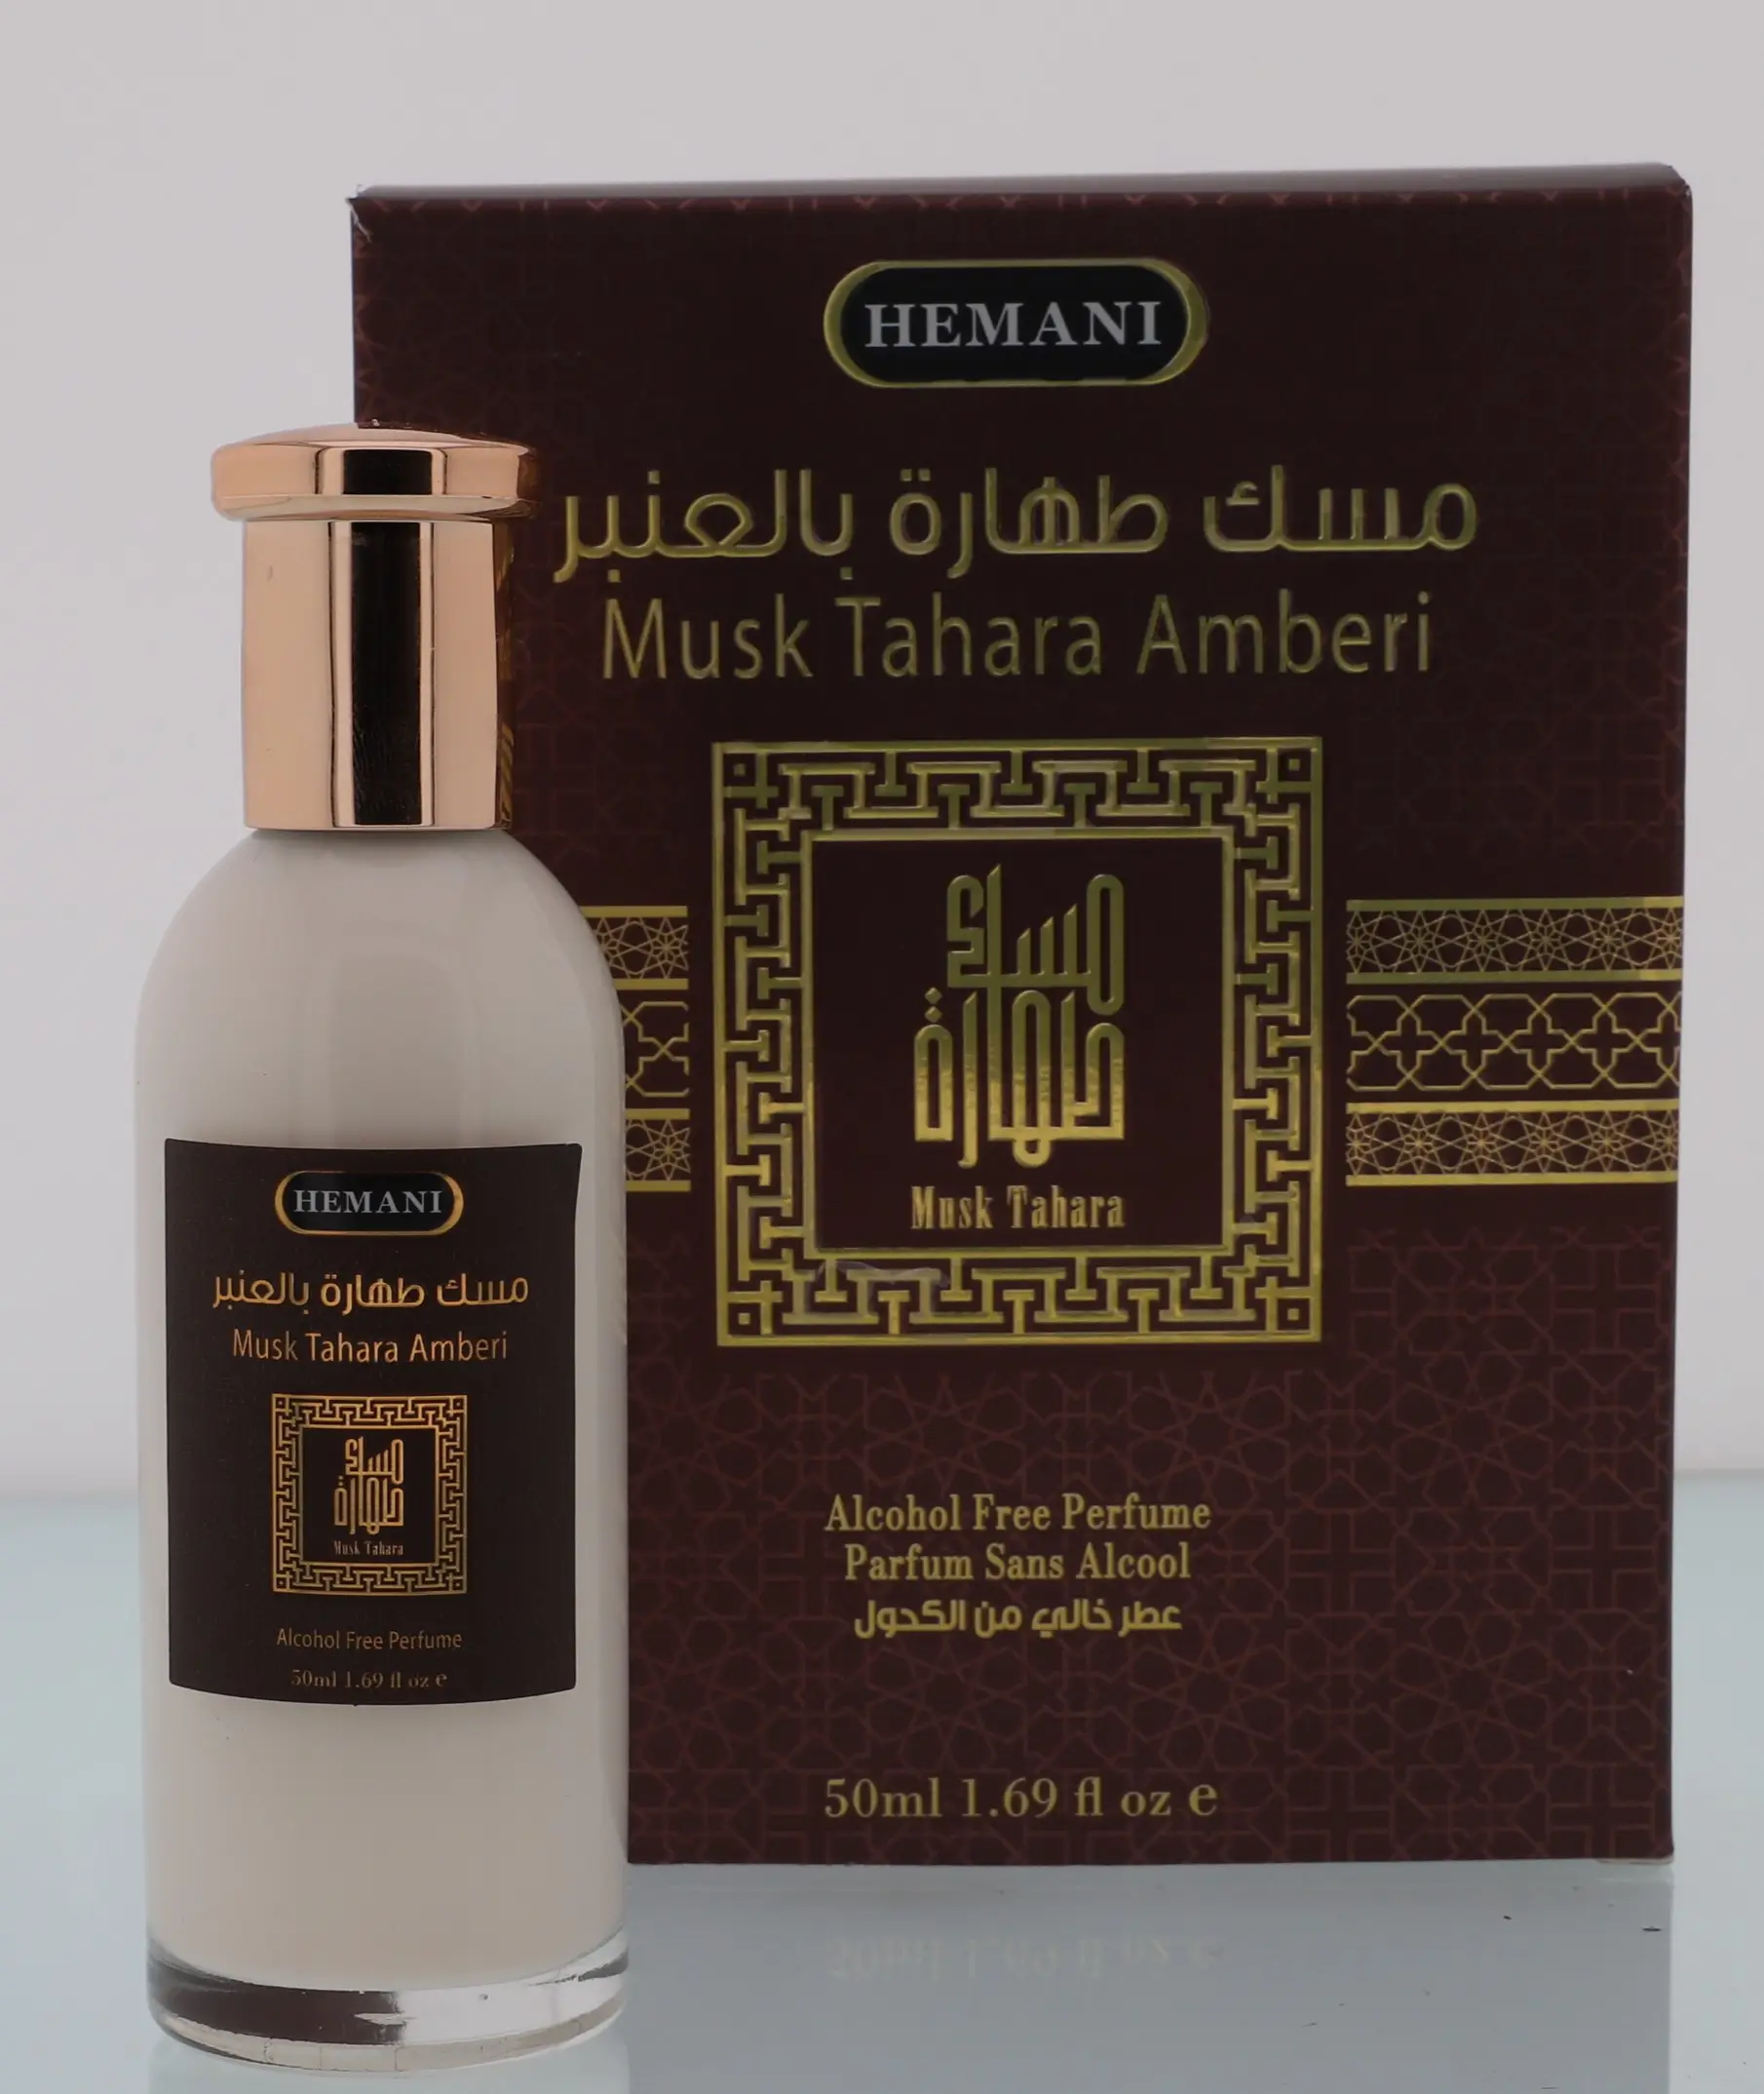 HEMANI Musk Tahara markalı koleksiyon erkekler ve kadınlar için 50ml parfüm alkolsüz parfüm uzun ömürlü koku özel etiket